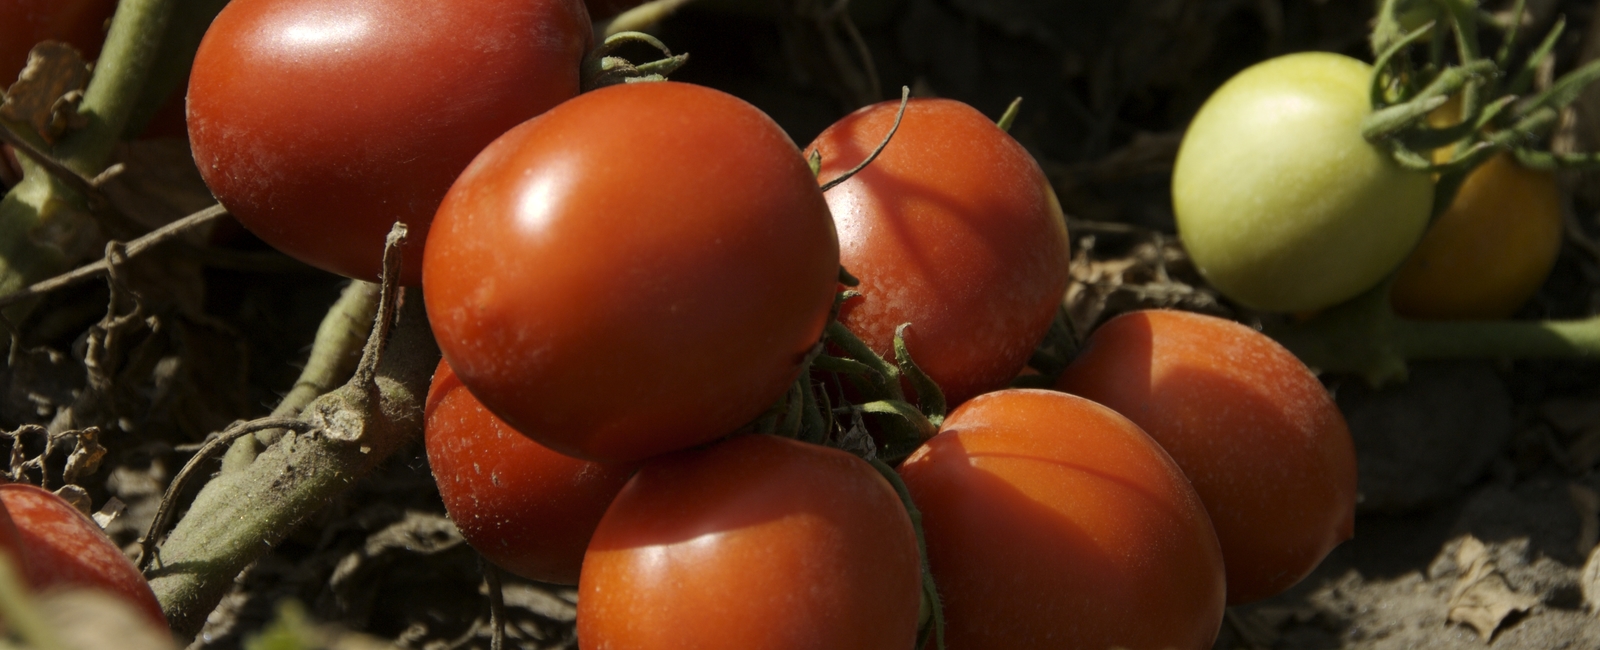 Función del fósforo en la producción de tomate